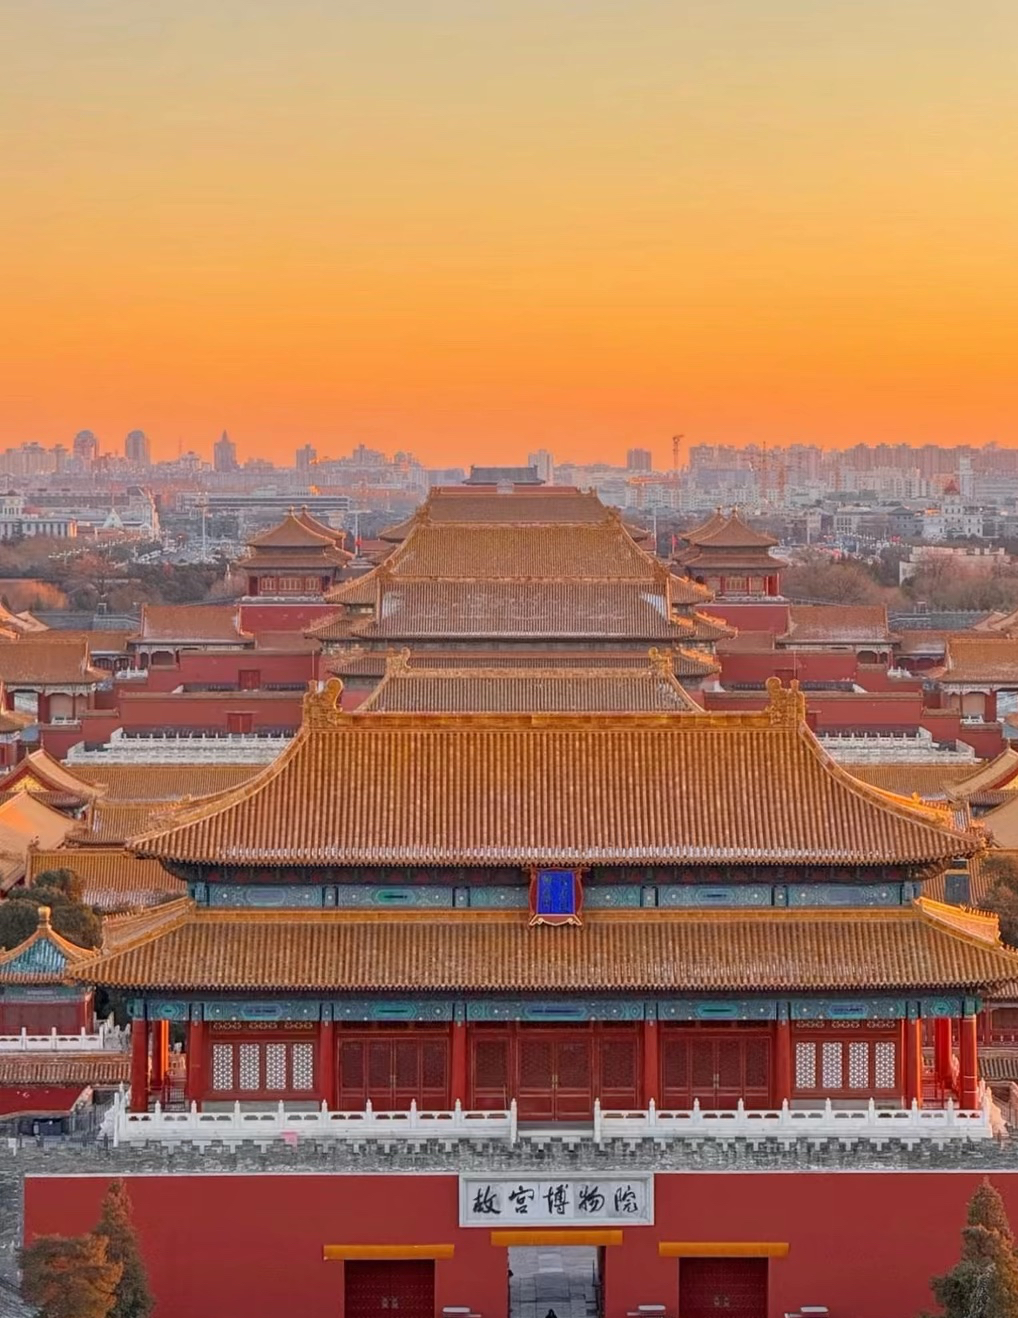 我们总要去趟北京吧，看看天安门，去去故宫，爬爬长城，吹吹后海的晚风。 #北京必去景点实拍 #五一去哪